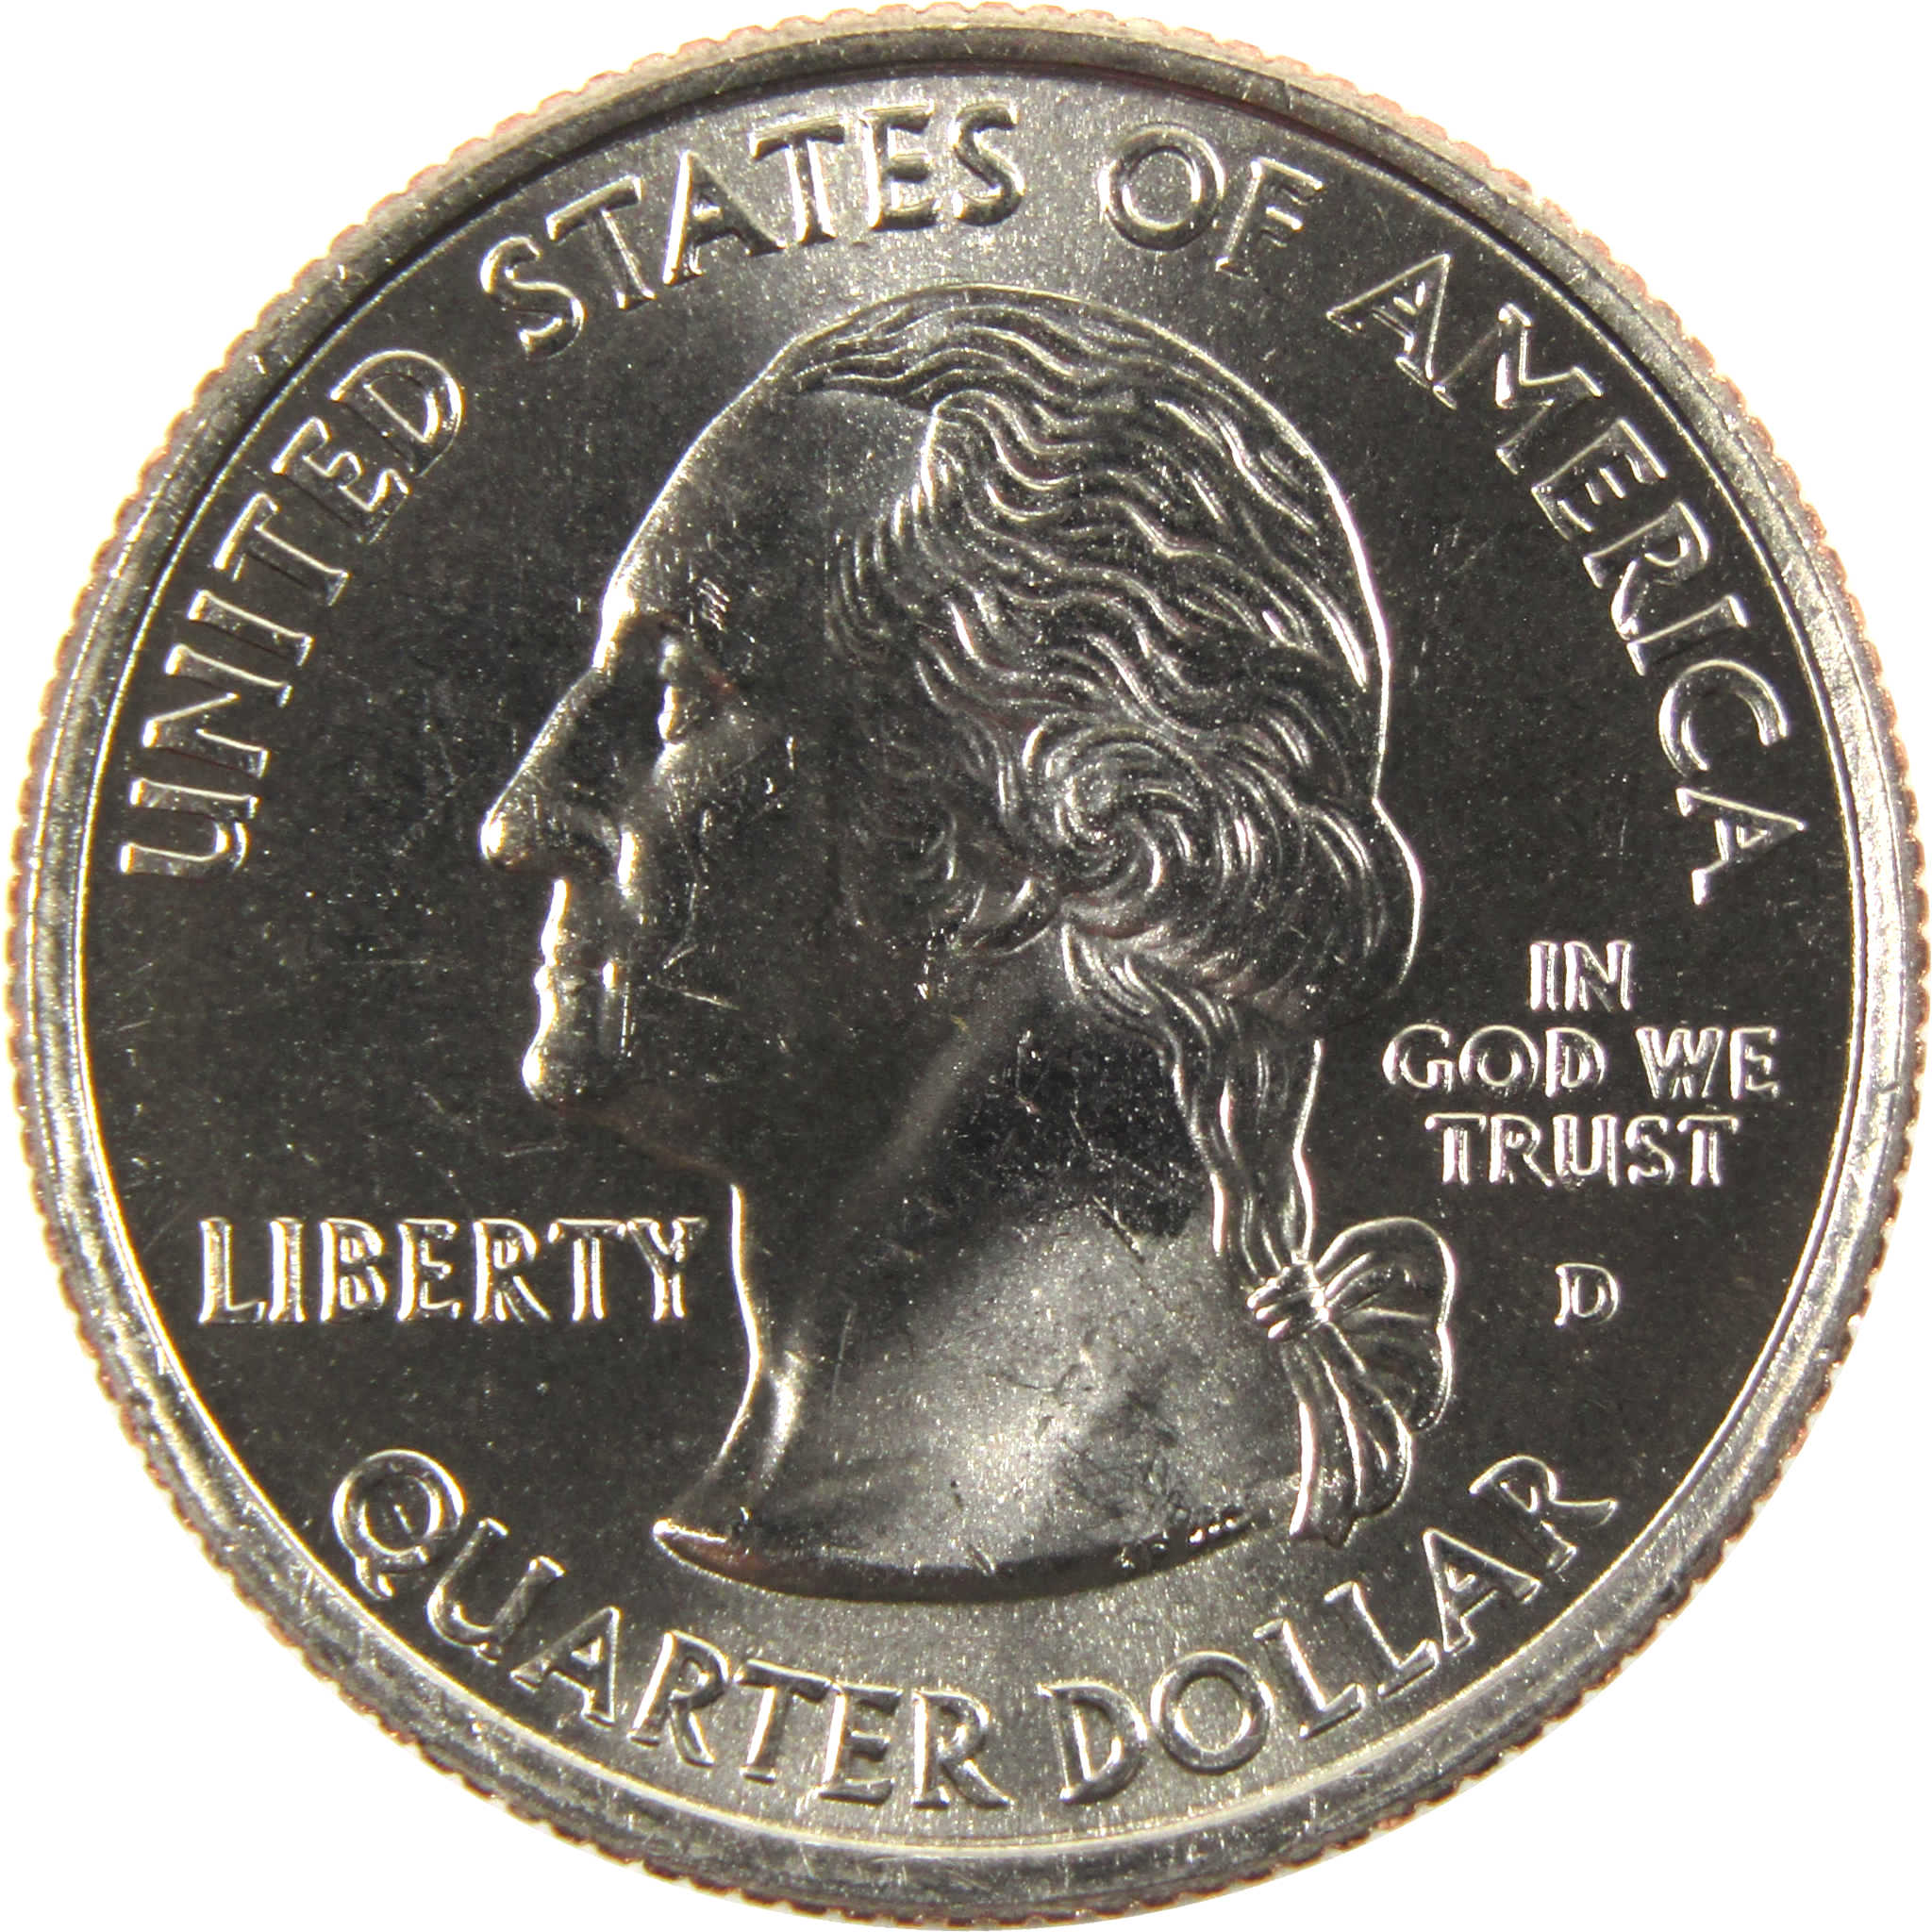 2008 D Arizona State Quarter BU Uncirculated Clad 25c Coin